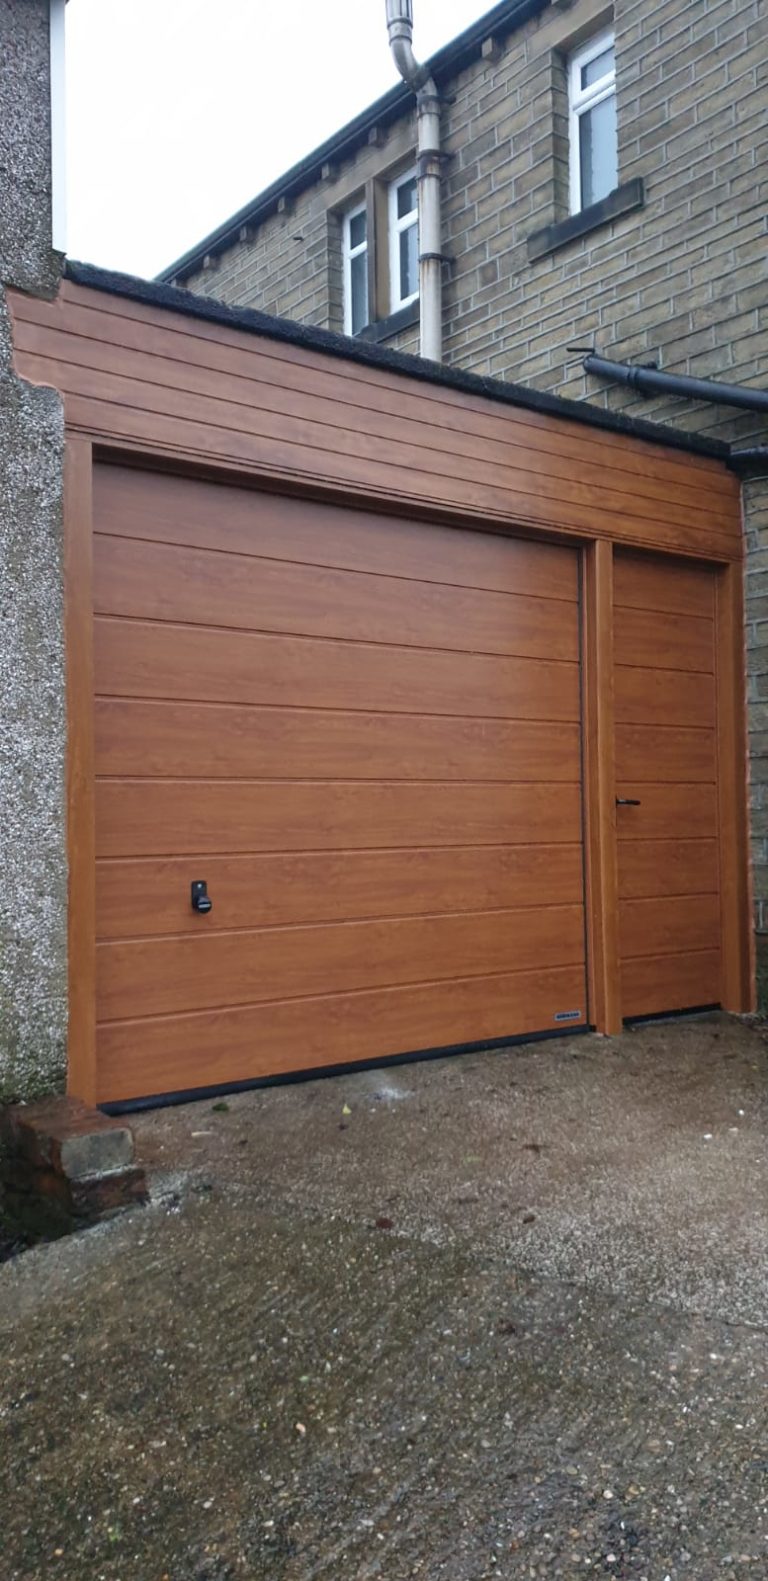 Hörmann Sectional Garage Door With A Garage Side Door